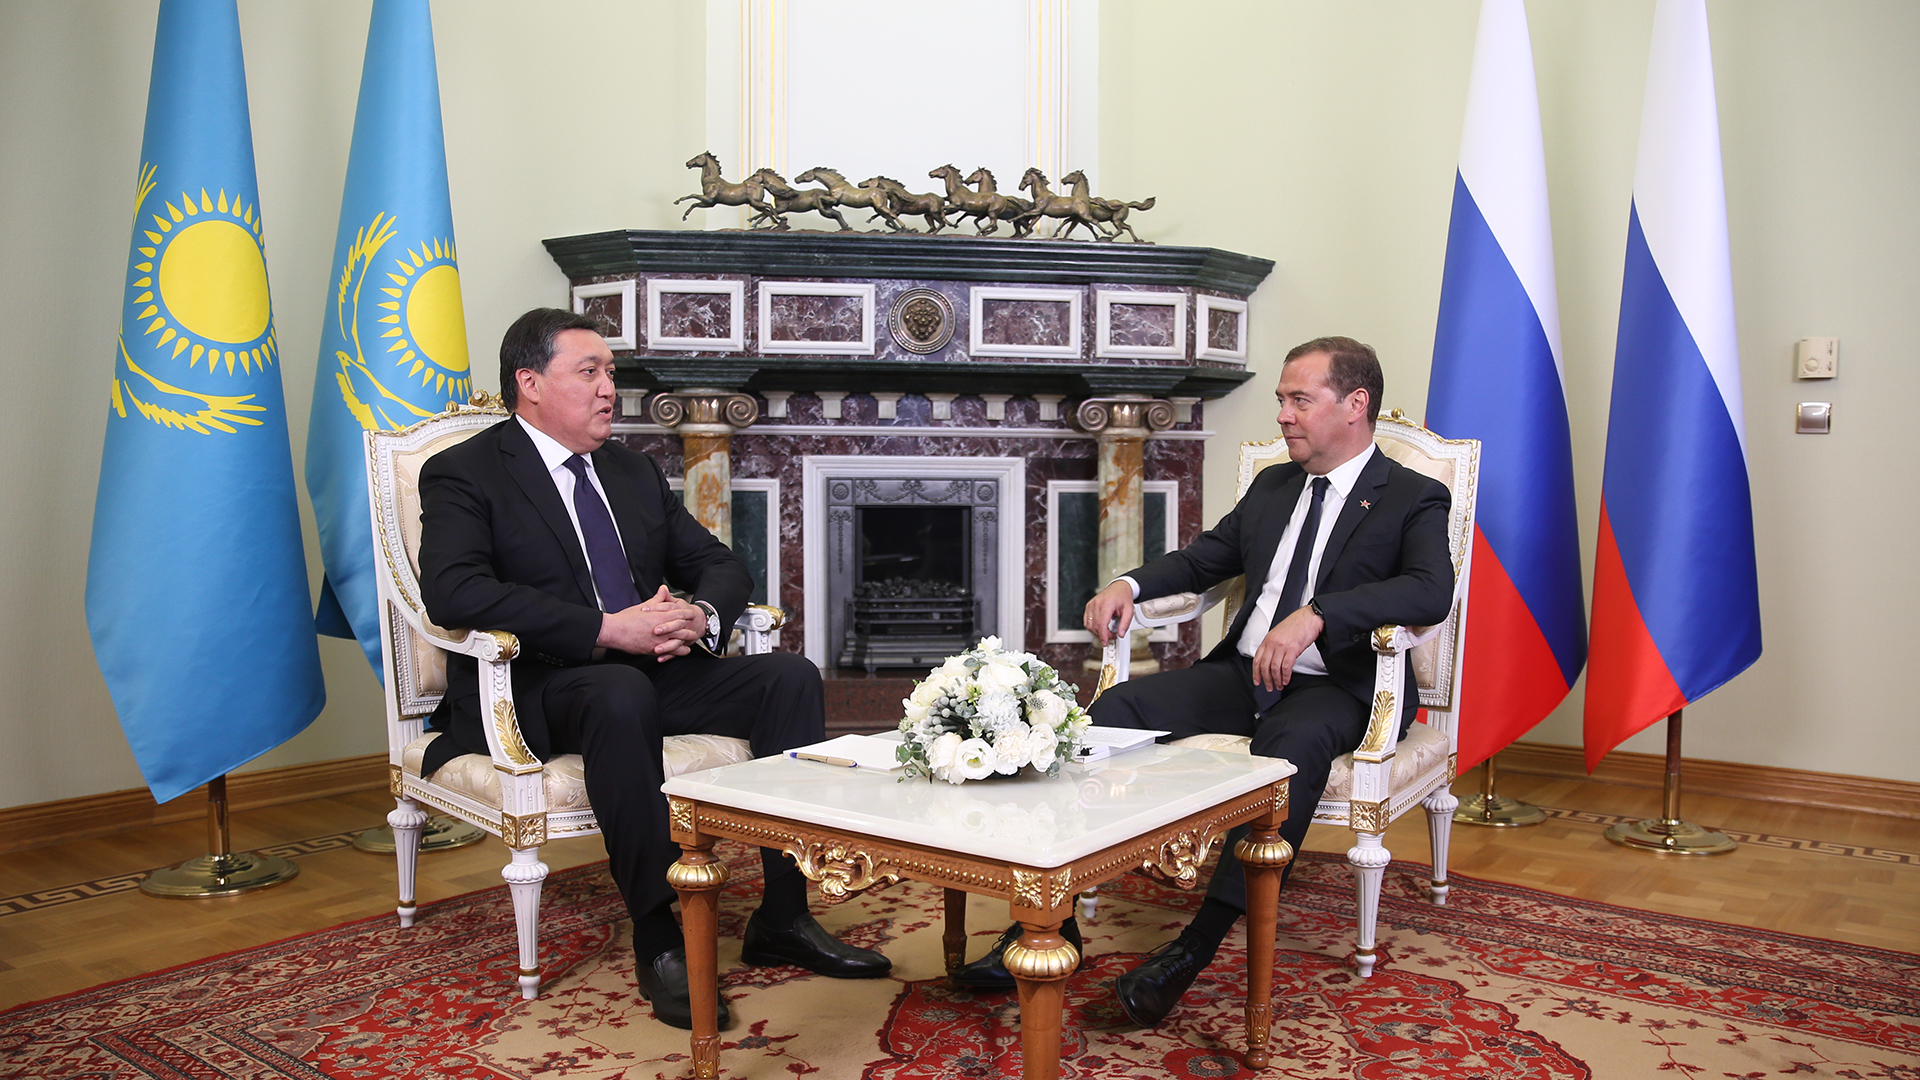 Askar Mamin meets with Dmitry Medvedev